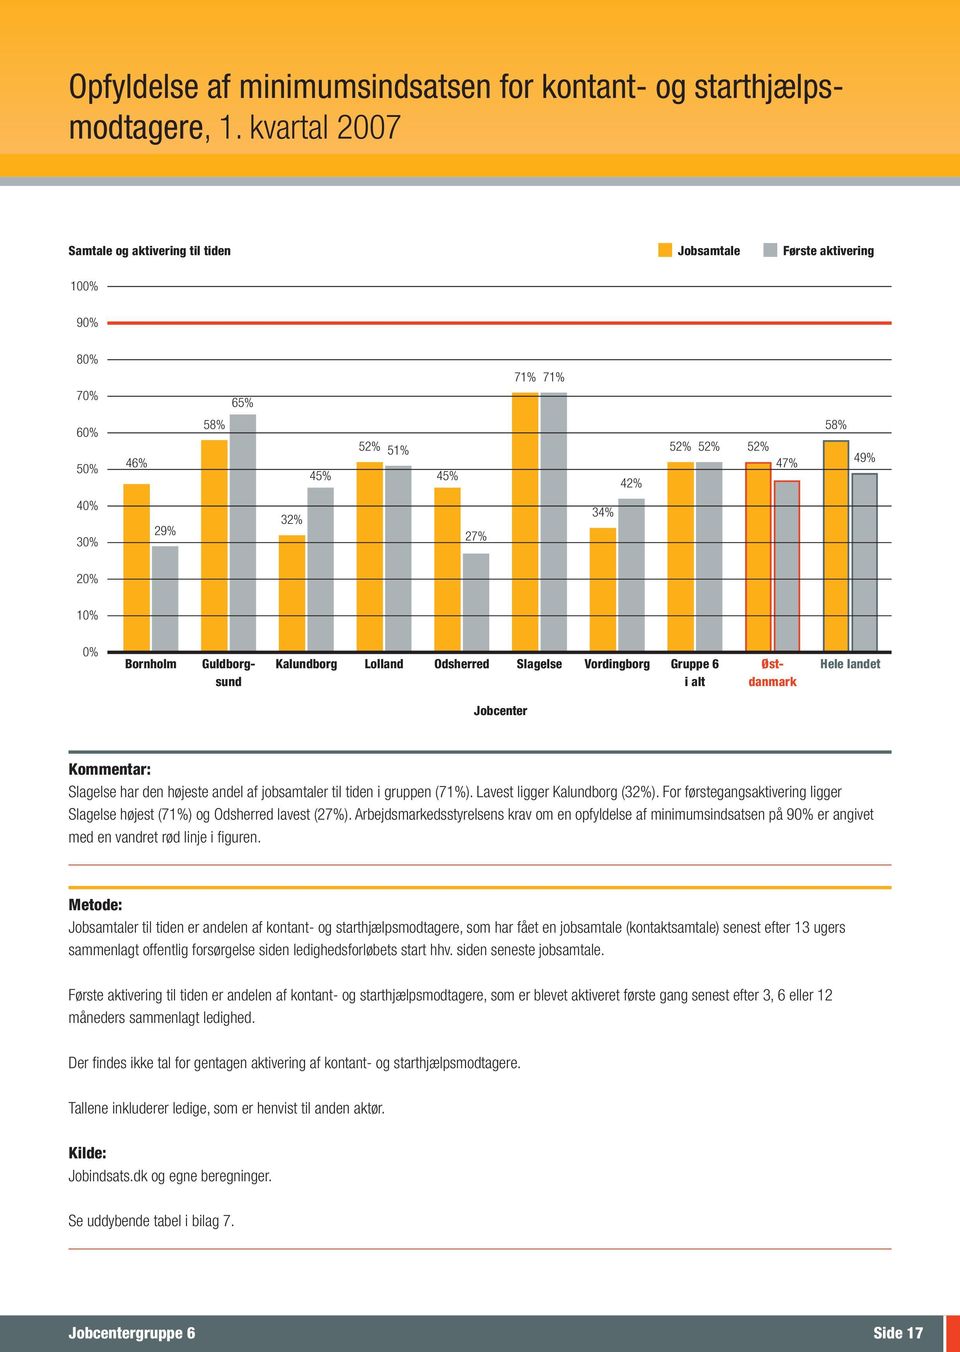 Bornholm Guldborg- Kalundborg Lolland Odsherred Slagelse Vordingborg Gruppe 6 Øst- Hele landet sund i alt danmark Slagelse har den højeste andel af jobsamtaler til tiden i gruppen (71%).